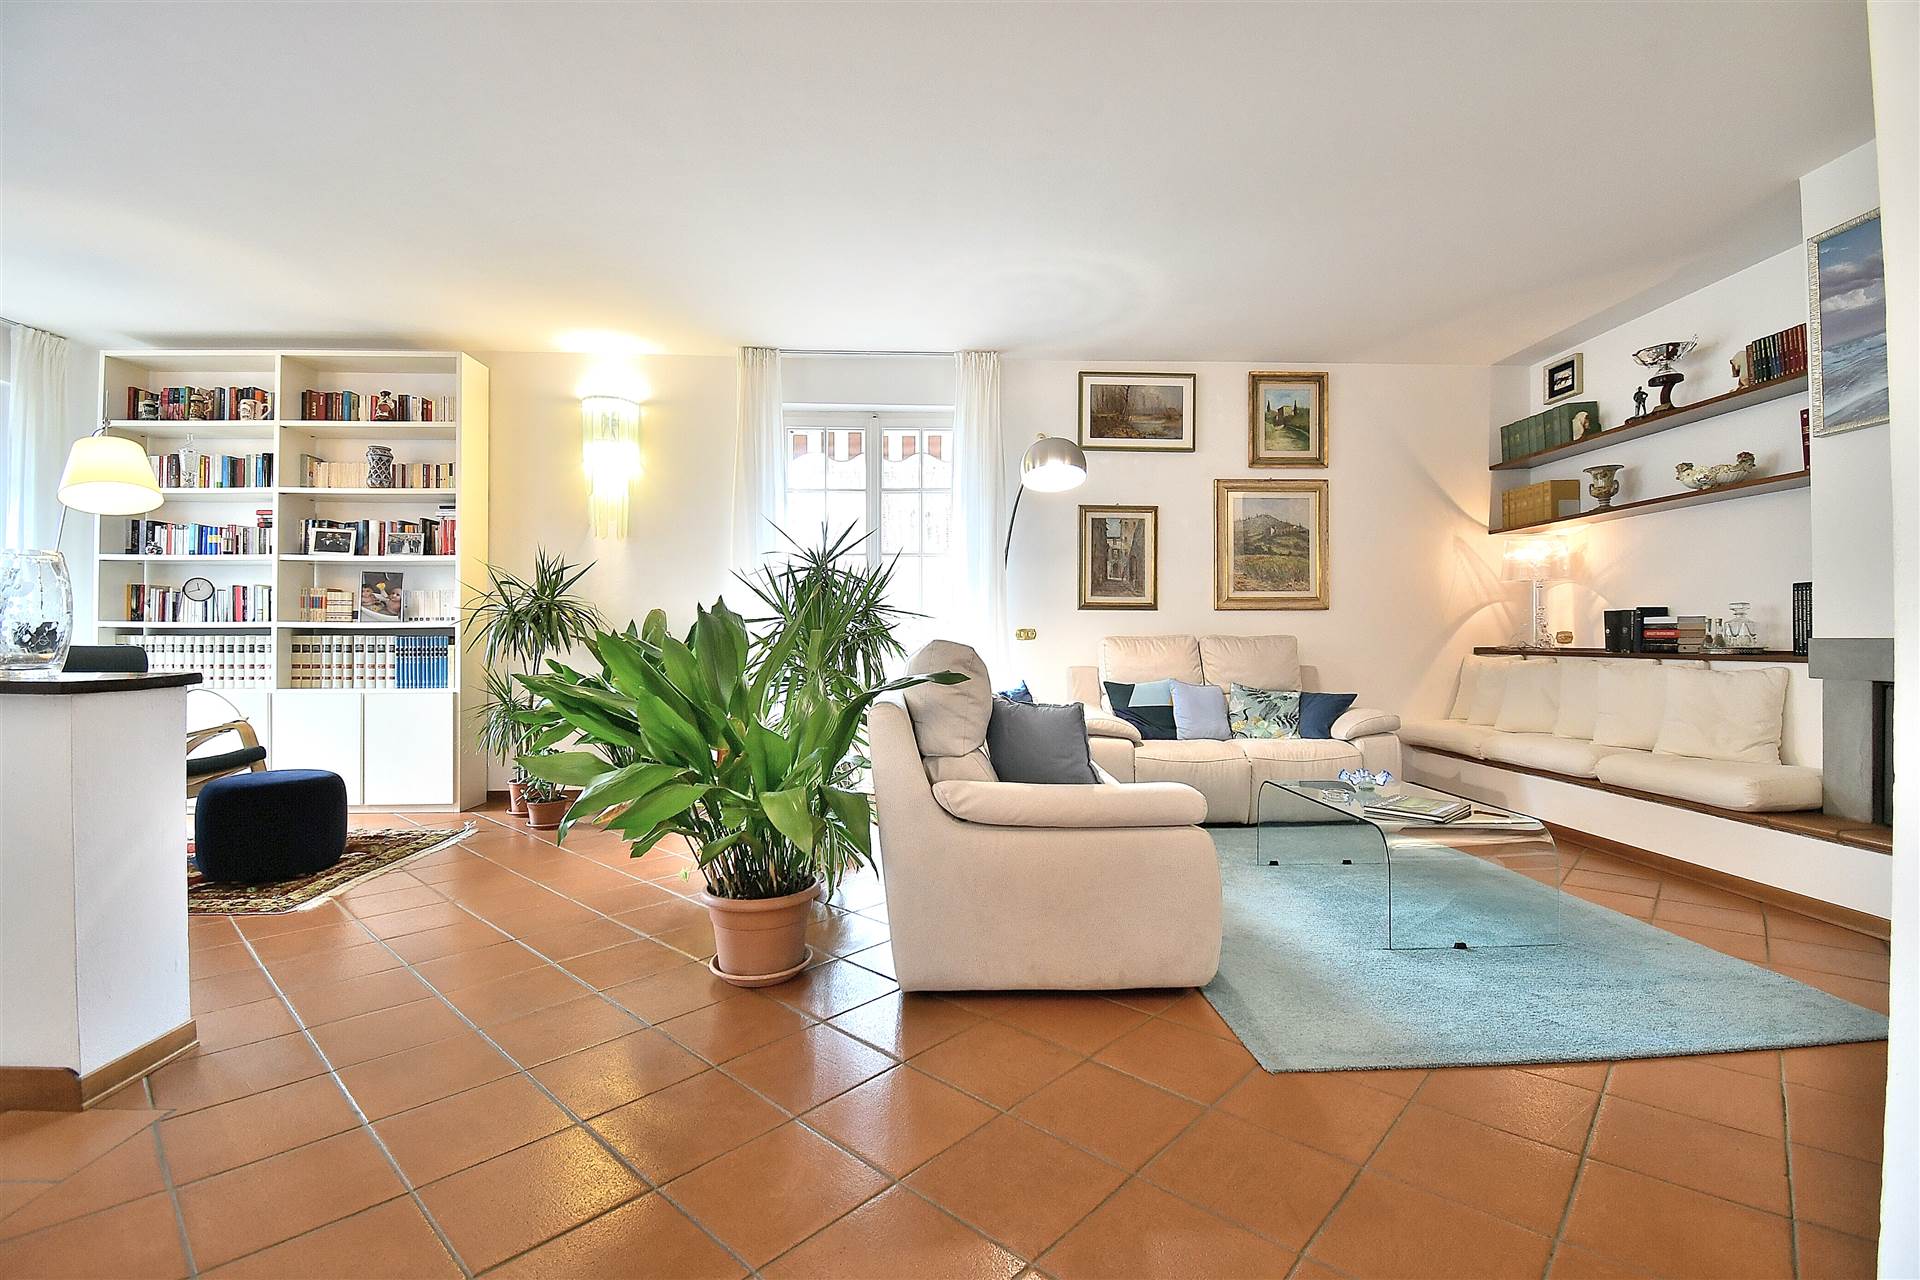 Monteroni d'Arbia, in piacevole contesto residenziale, proponiamo splendido appartamento con ampio giardino privato all'interno di una bella villetta trifamiliare edificata nel 1984 e successivamente 